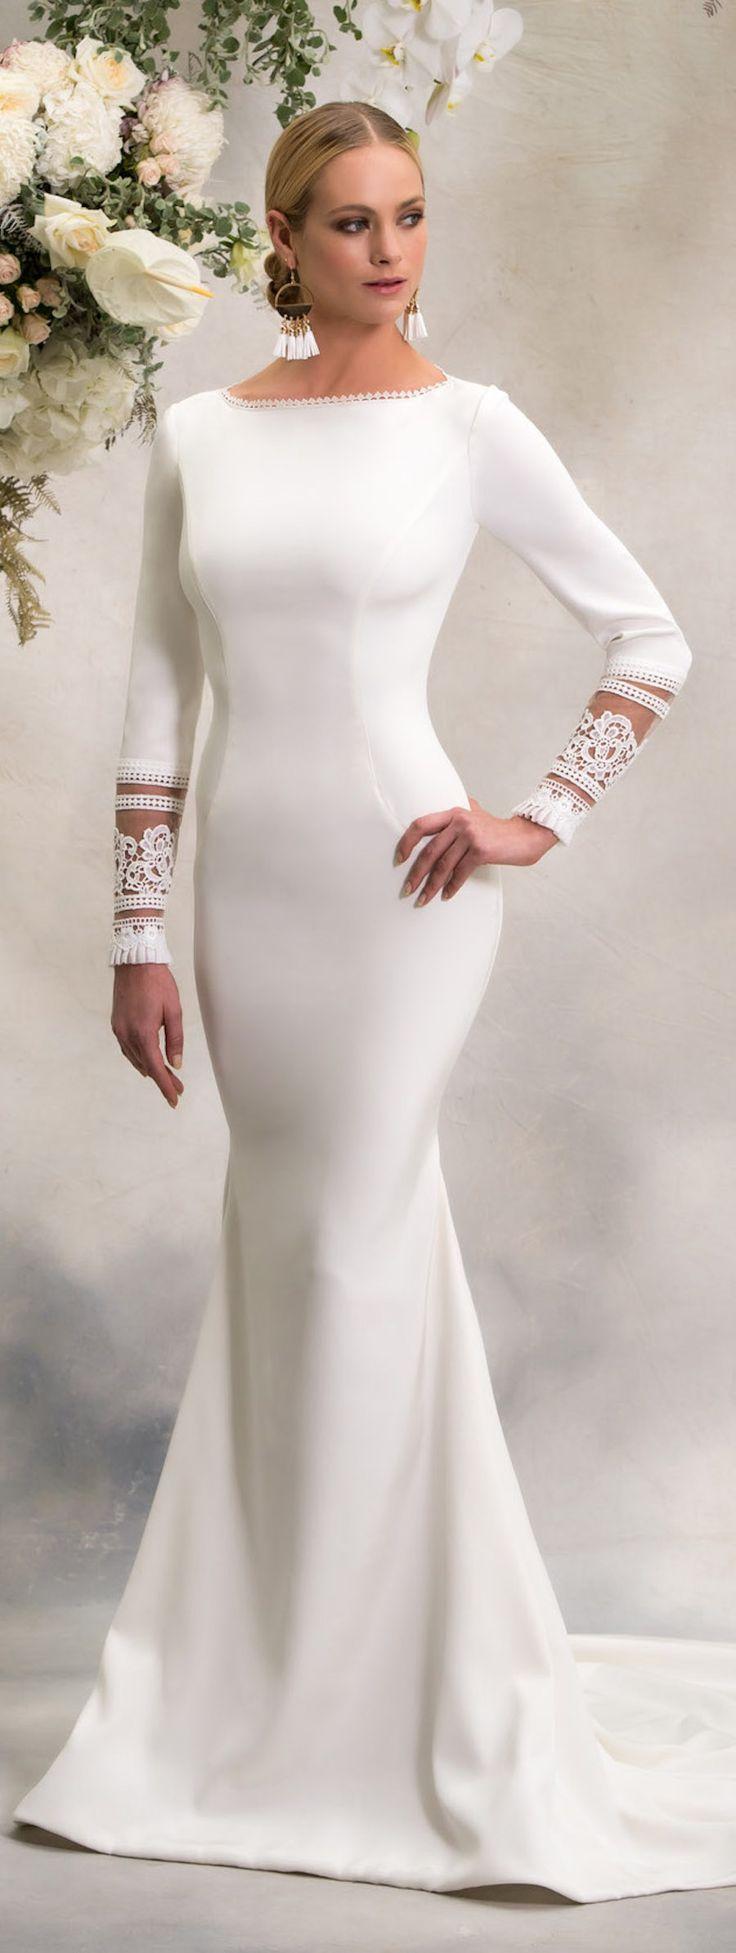 زفاف - Simple Wedding Dresses Inspired By Meghan Markle